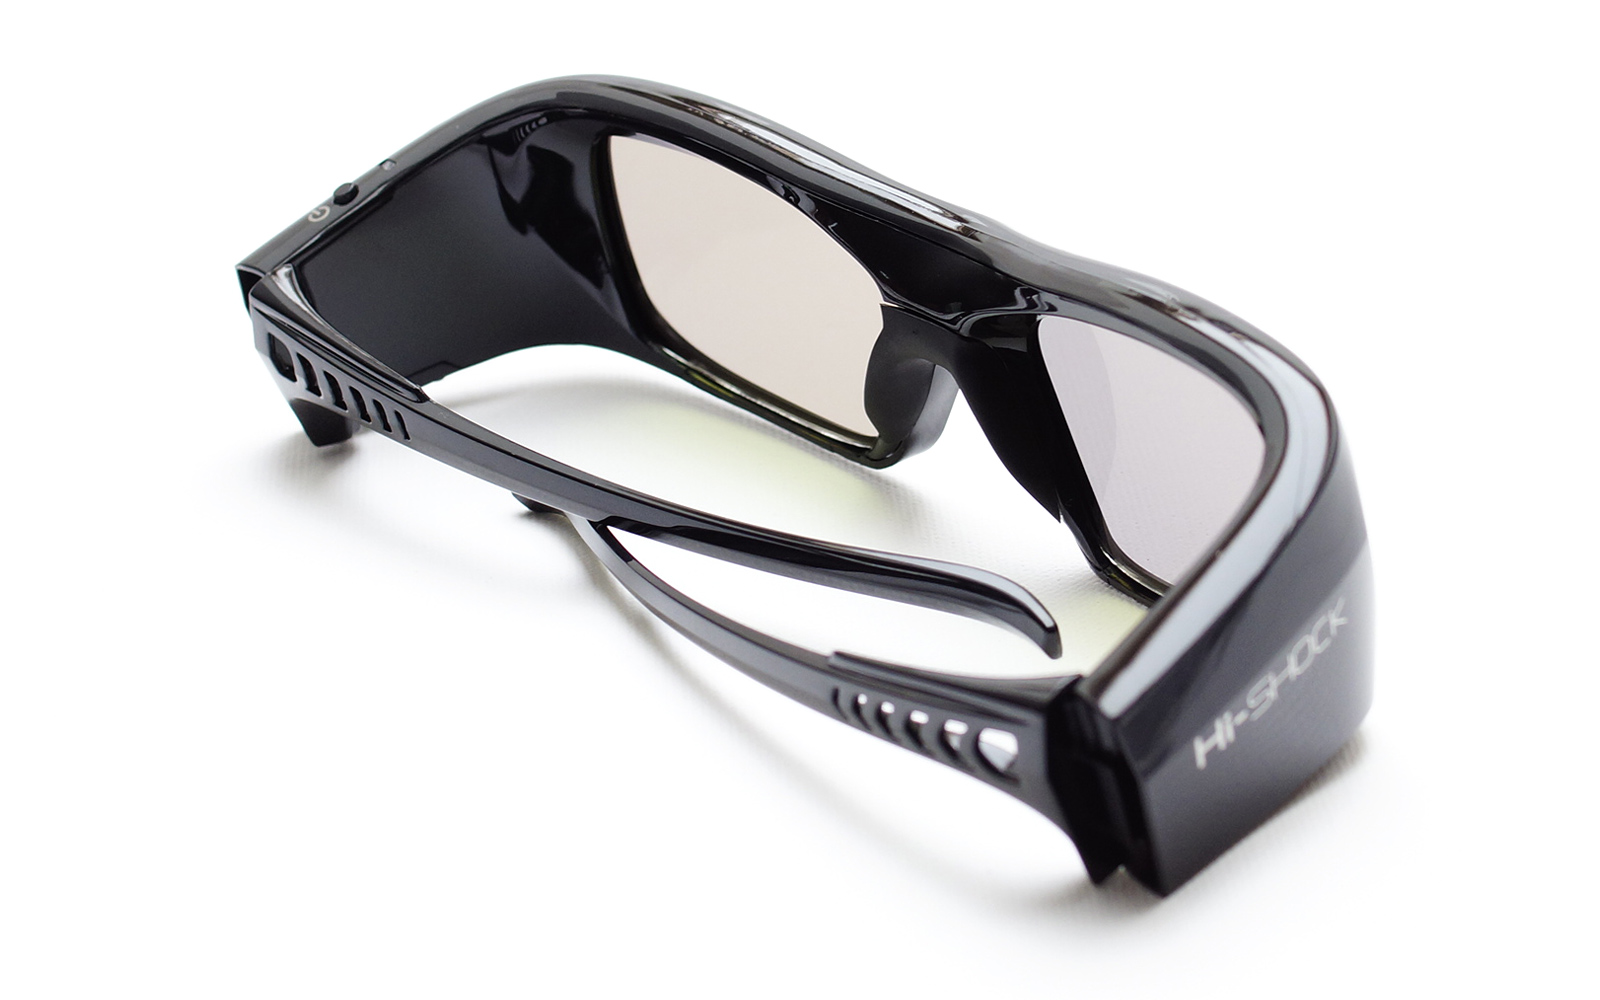 3D aktive HI-SHOCK Link wiederaufladbar DLP 3D Brille DLP 3D für schwarz Diamond Black - Brille Pro - Beamer